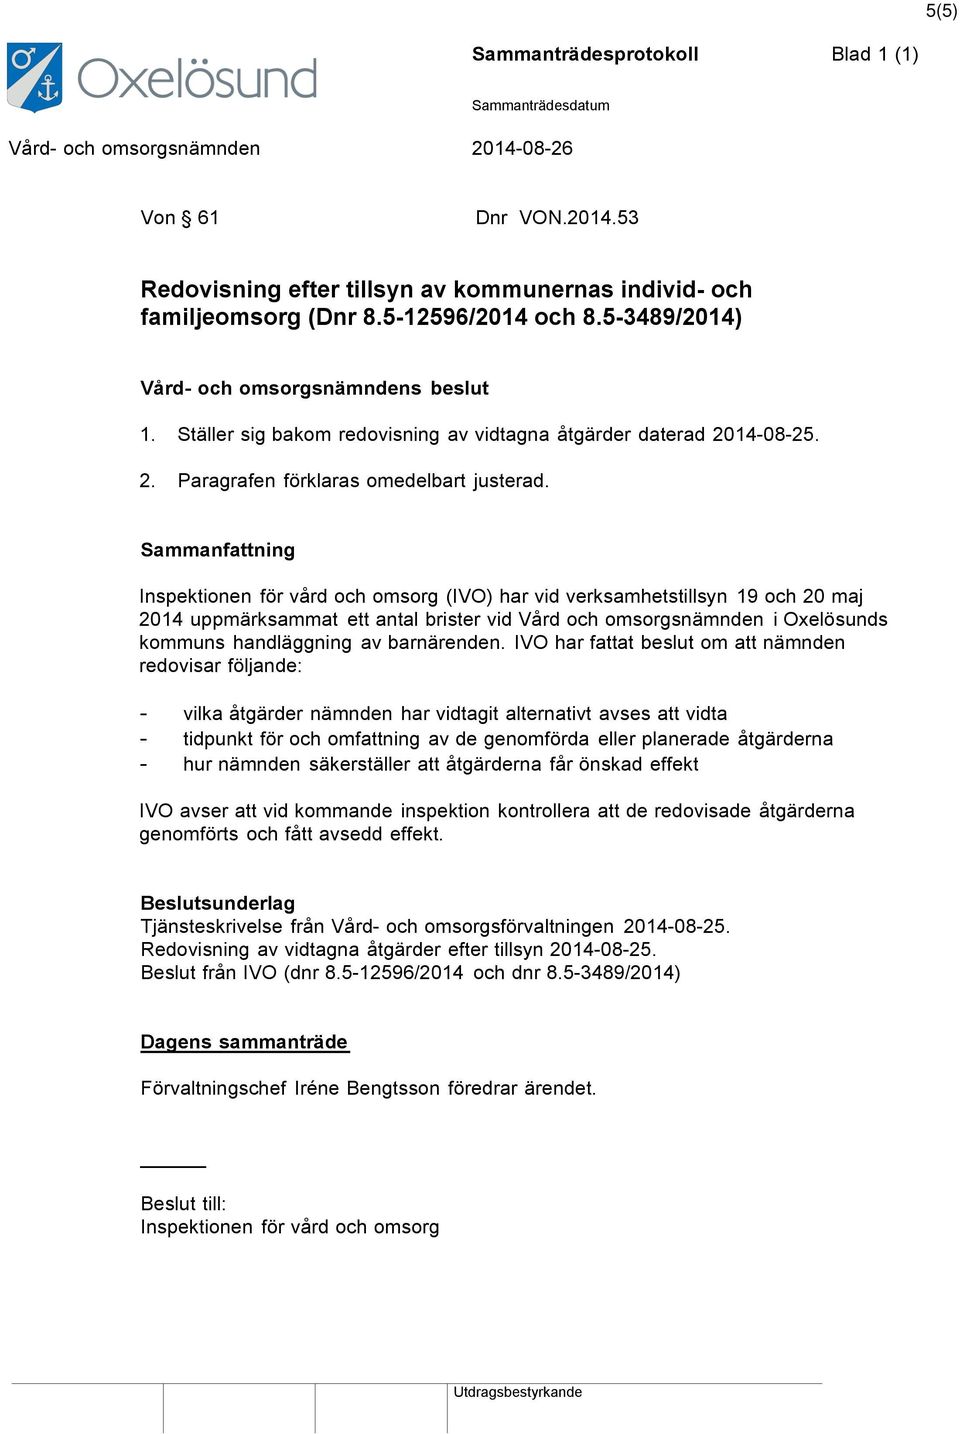 Sammanfattning Inspektionen för vård och omsorg (IVO) har vid verksamhetstillsyn 19 och 20 maj 2014 uppmärksammat ett antal brister vid Vård och omsorgsnämnden i Oxelösunds kommuns handläggning av